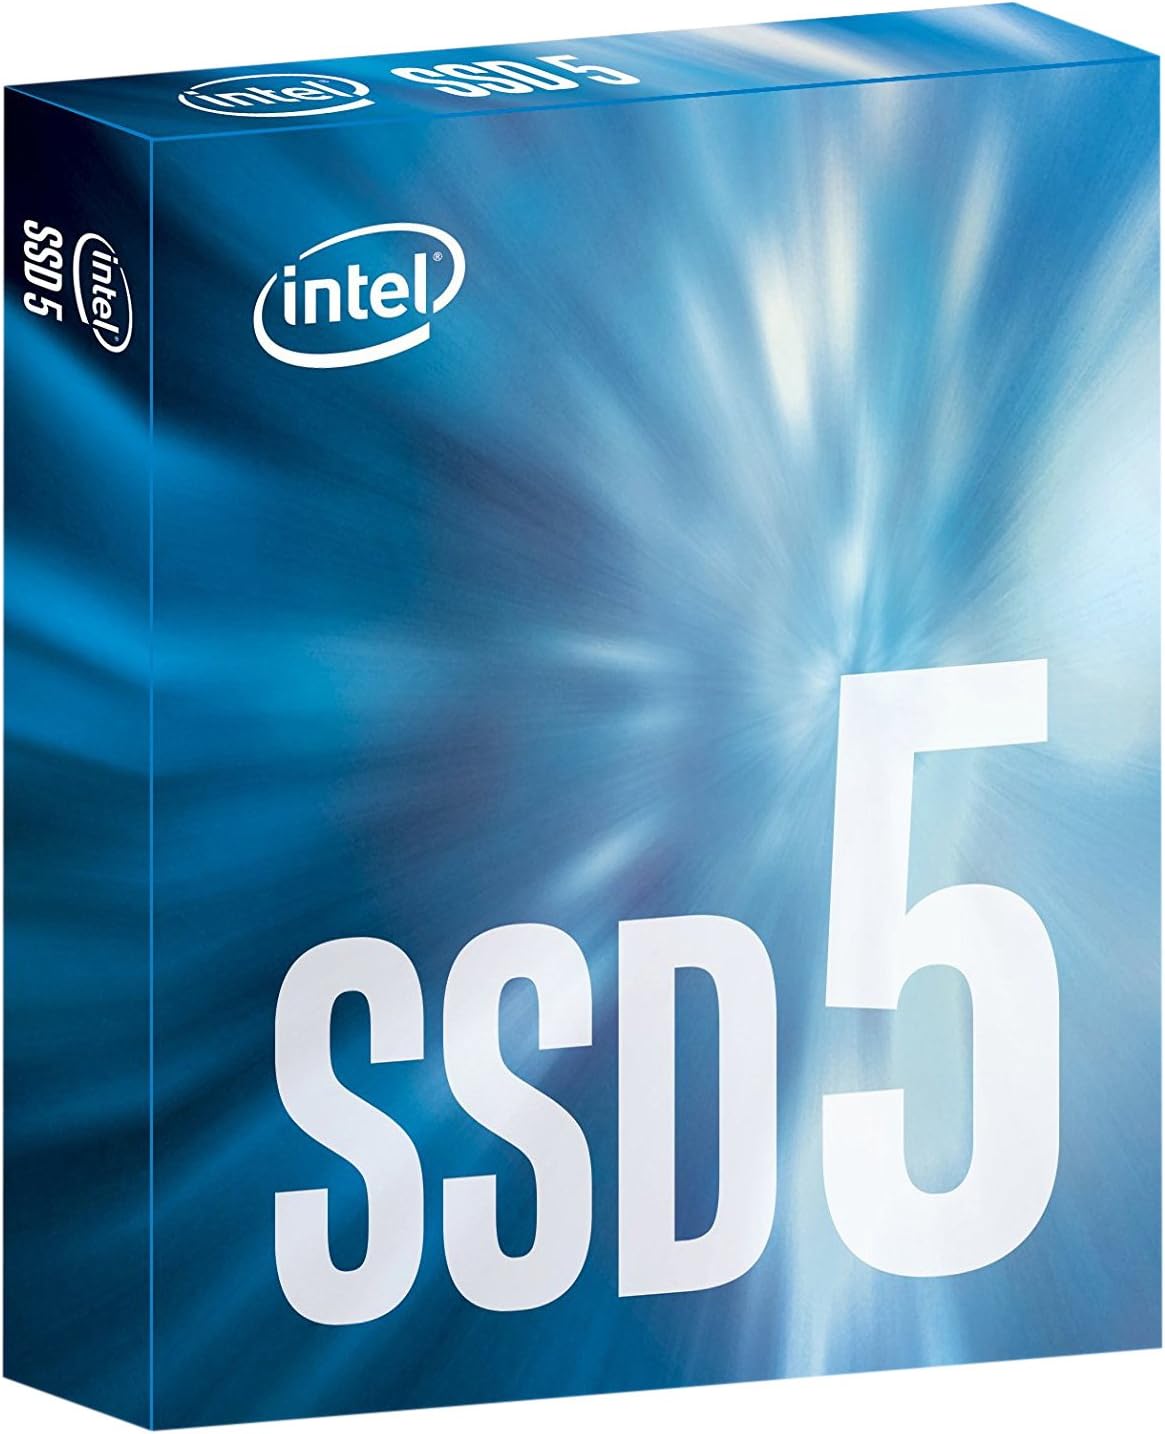 DISQUE SSD INTEL SERIES 540S 480GB M.2 SATA 16NM TLC